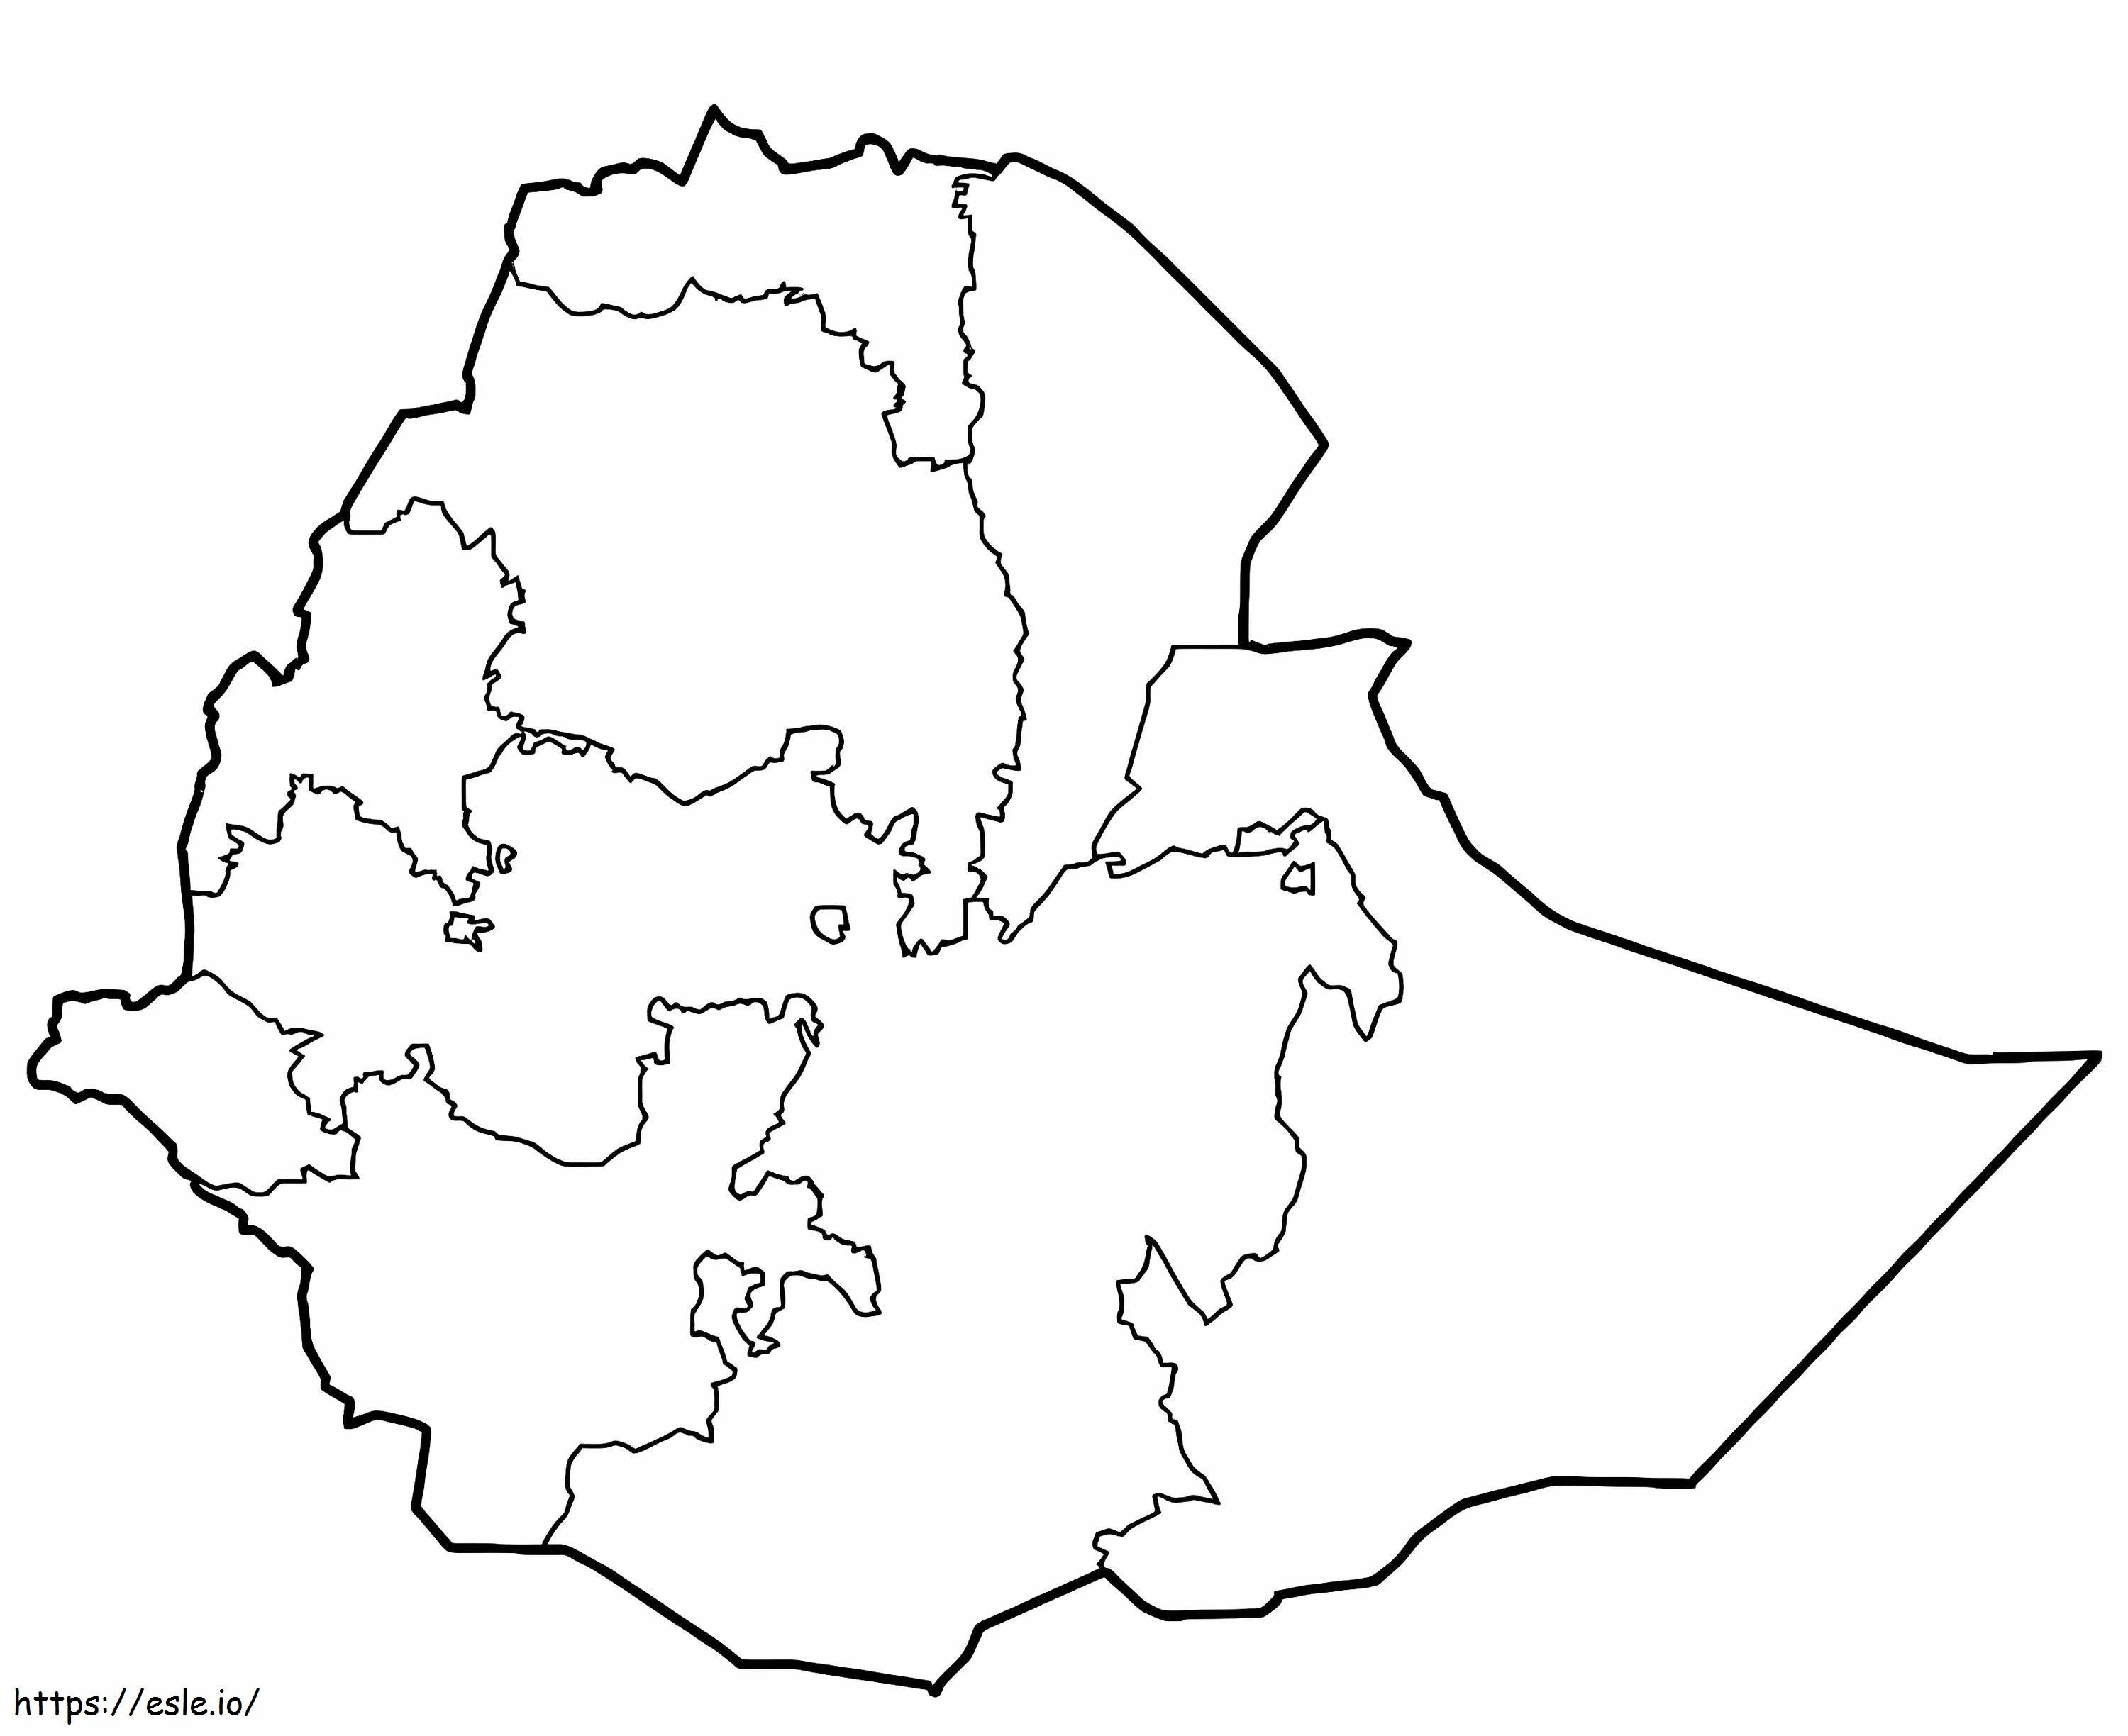 Karte von Äthiopien ausmalbilder